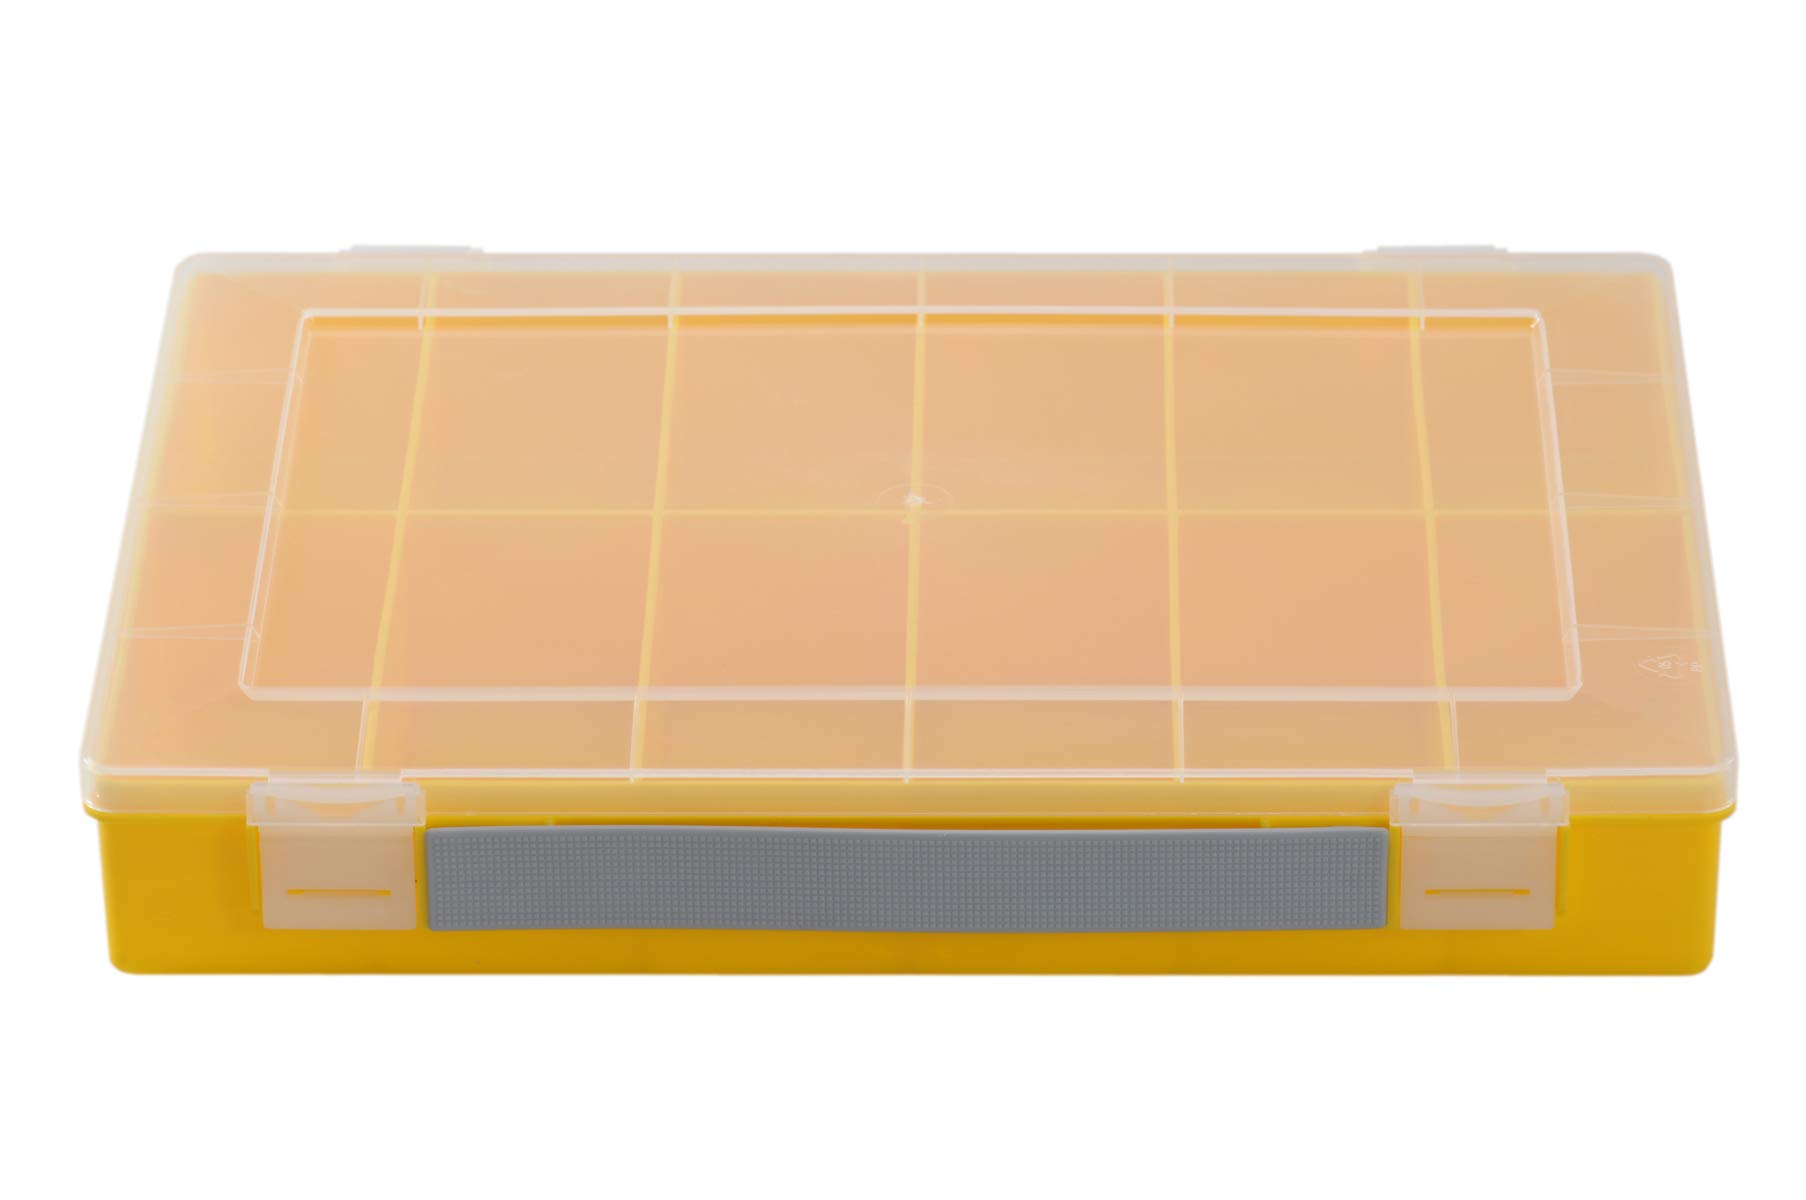 hünersdorff Sortimentskasten PP-Classic mit 12 Fächern | stabile Sortierbox für Schrauben und andere Kleinteile | feste Facheinteilung | 22,5 x 33,5 x 5,5 cm, gelb von hünersdorff